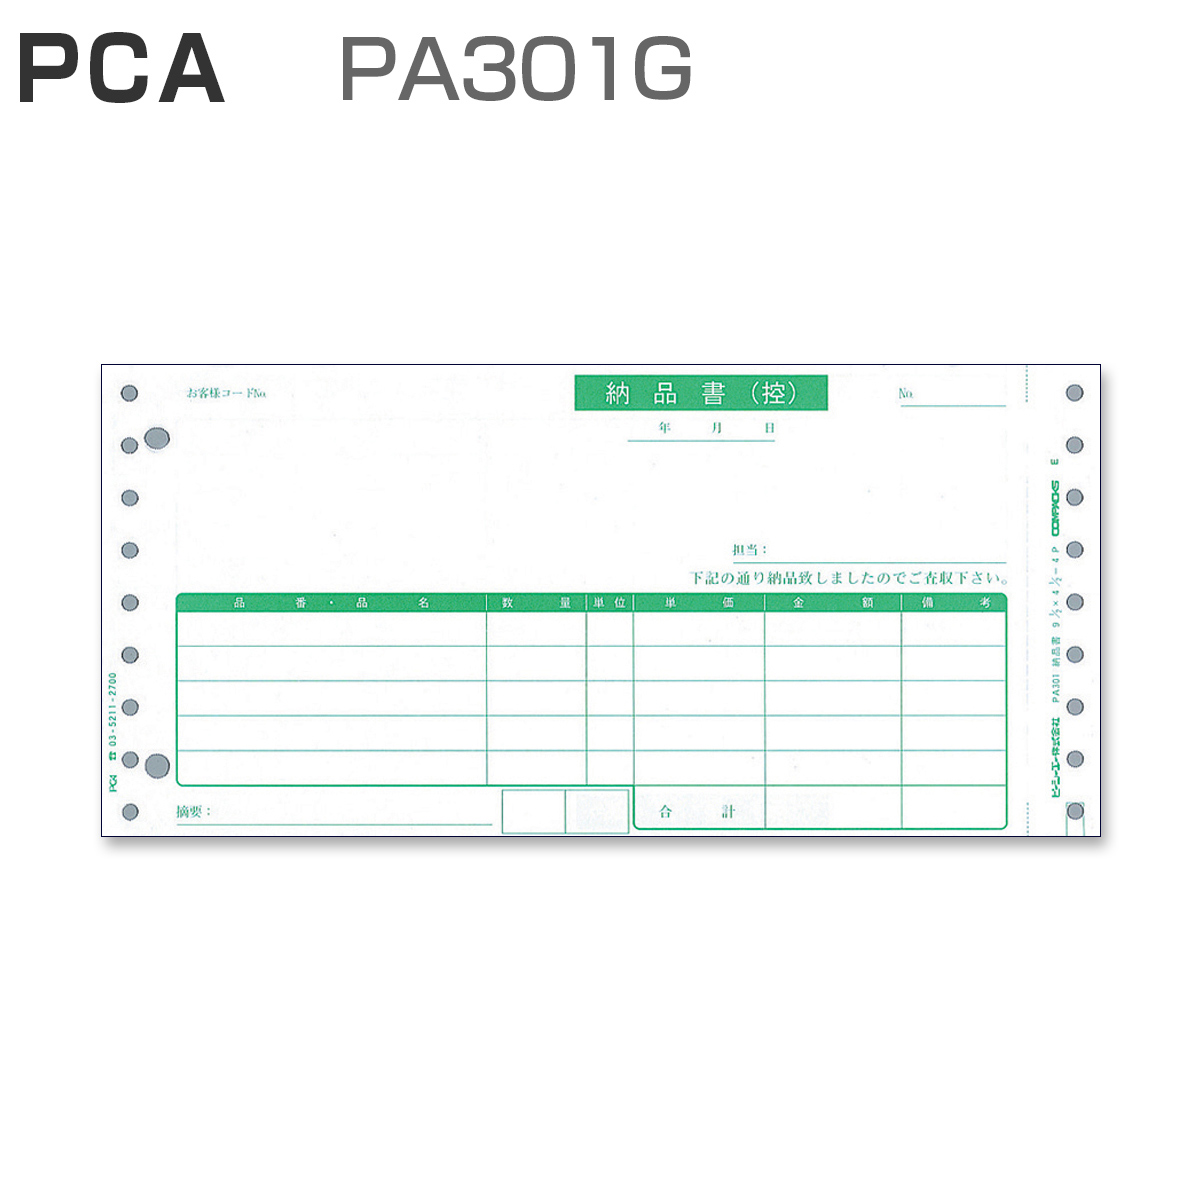 パナシア】 PCA PA301G 納品書 【4枚複写】 (200枚)